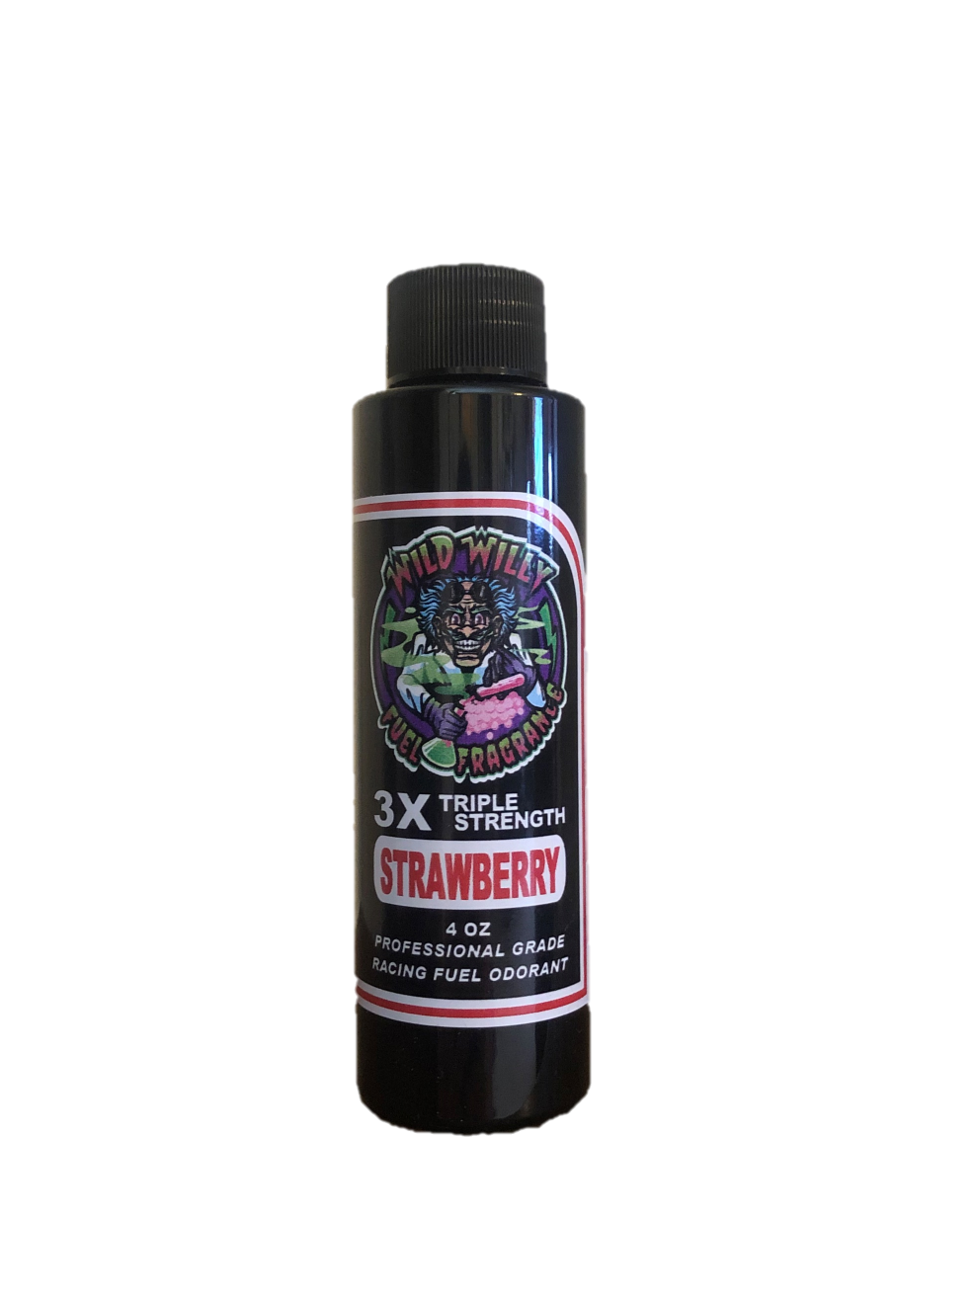 Strawberry - Wild Willy Fuel Fragrance - 3X Triple Strength!